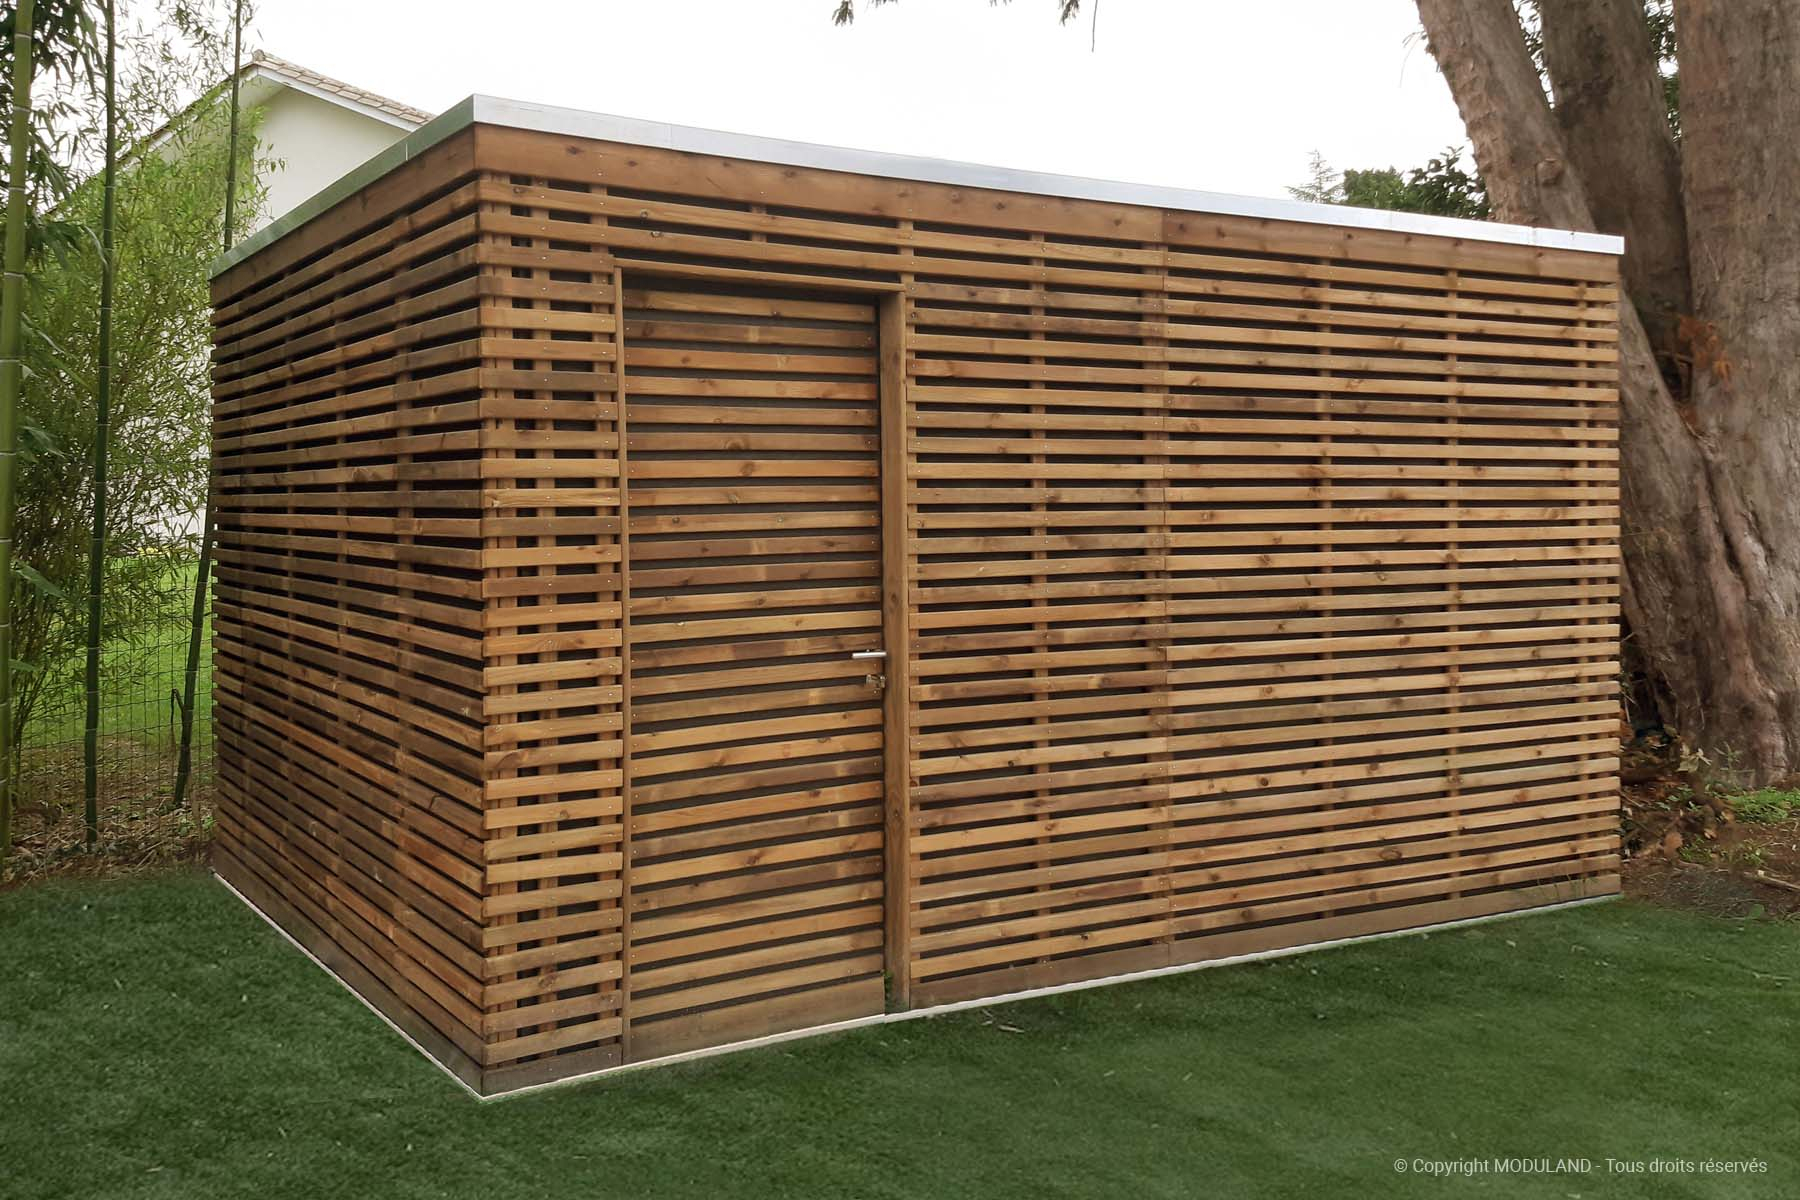 Fabricant D'abris Et Structures Bois Sur Mesure | Moduland intérieur Abris De Jardin Moderne